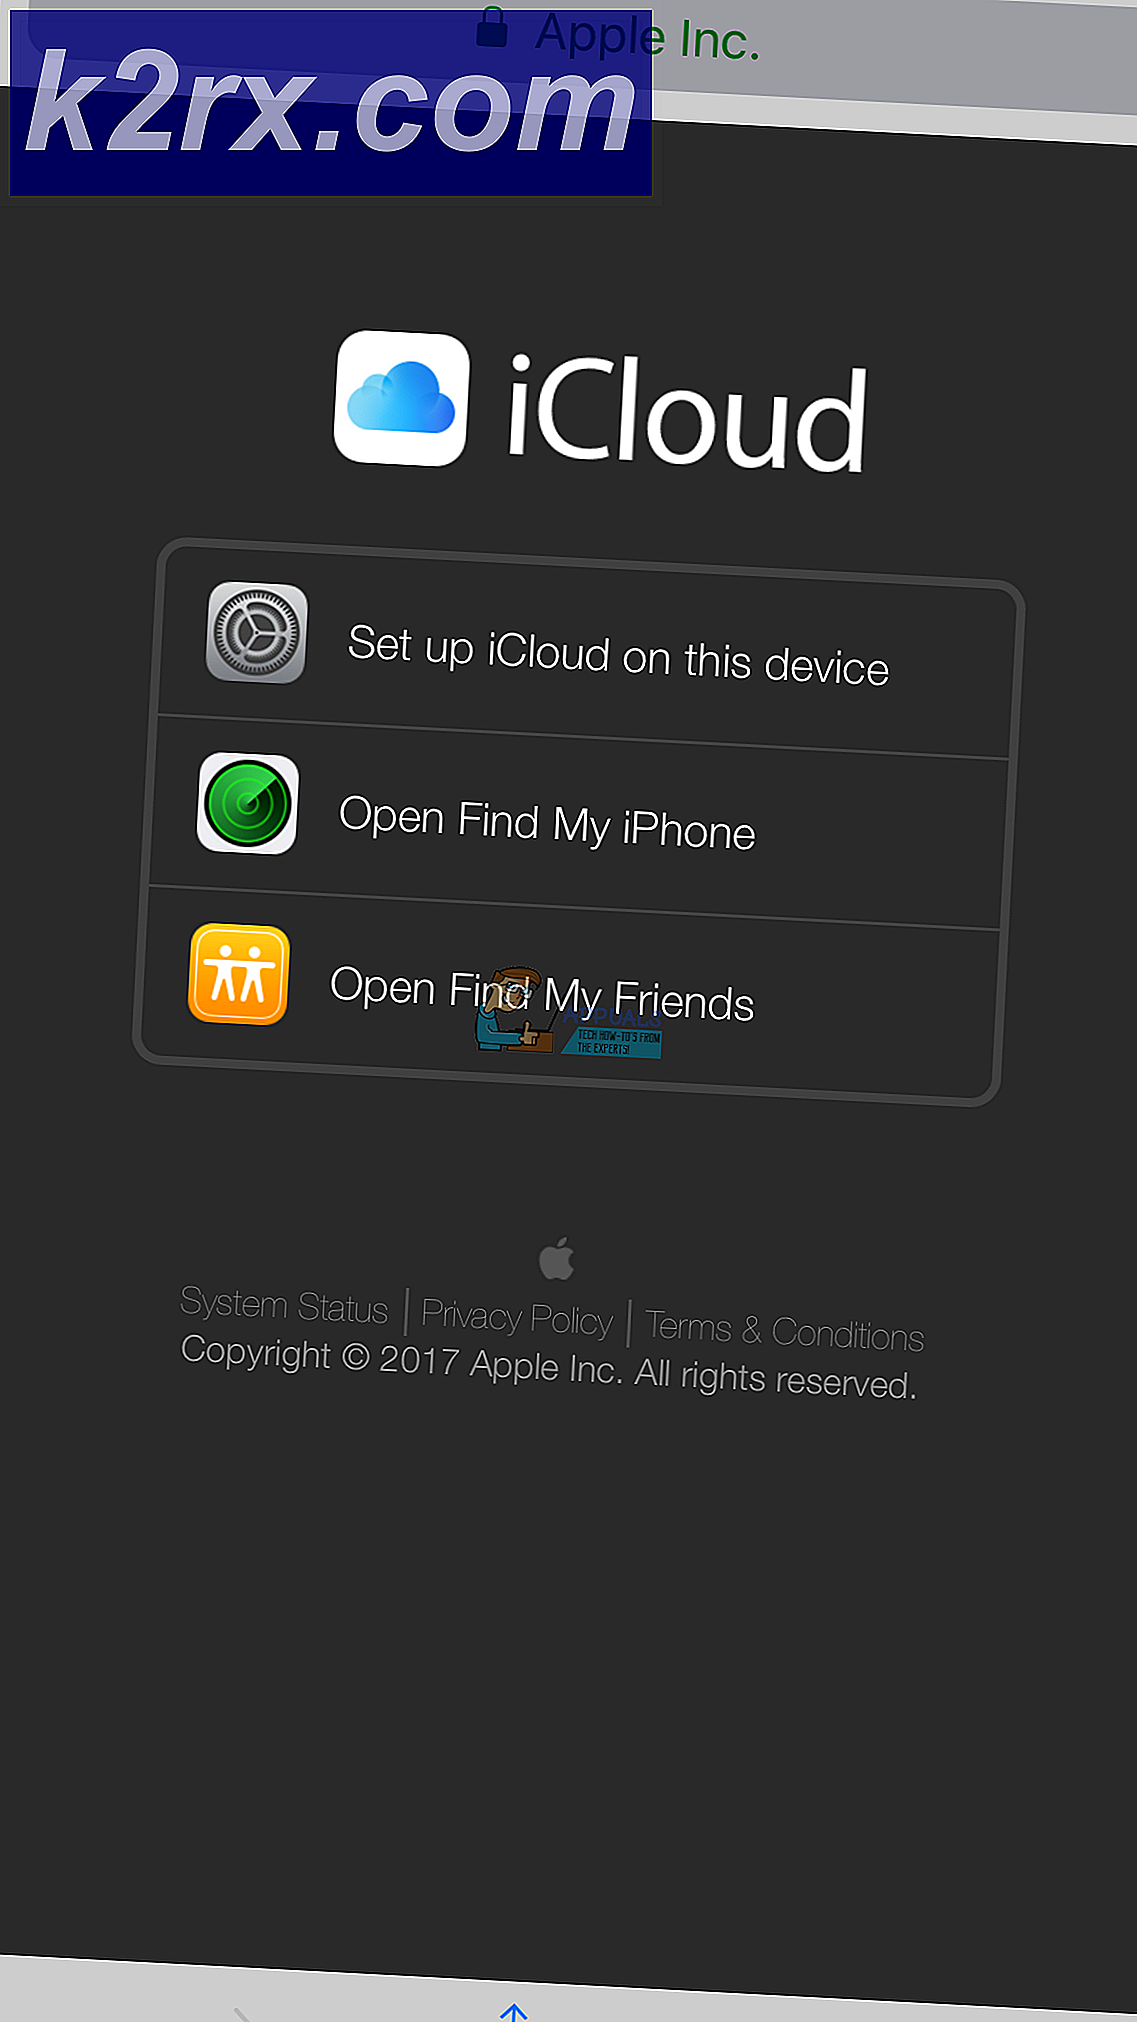 Sådan logger du på iCloud.com Brug din iPhone eller iPad